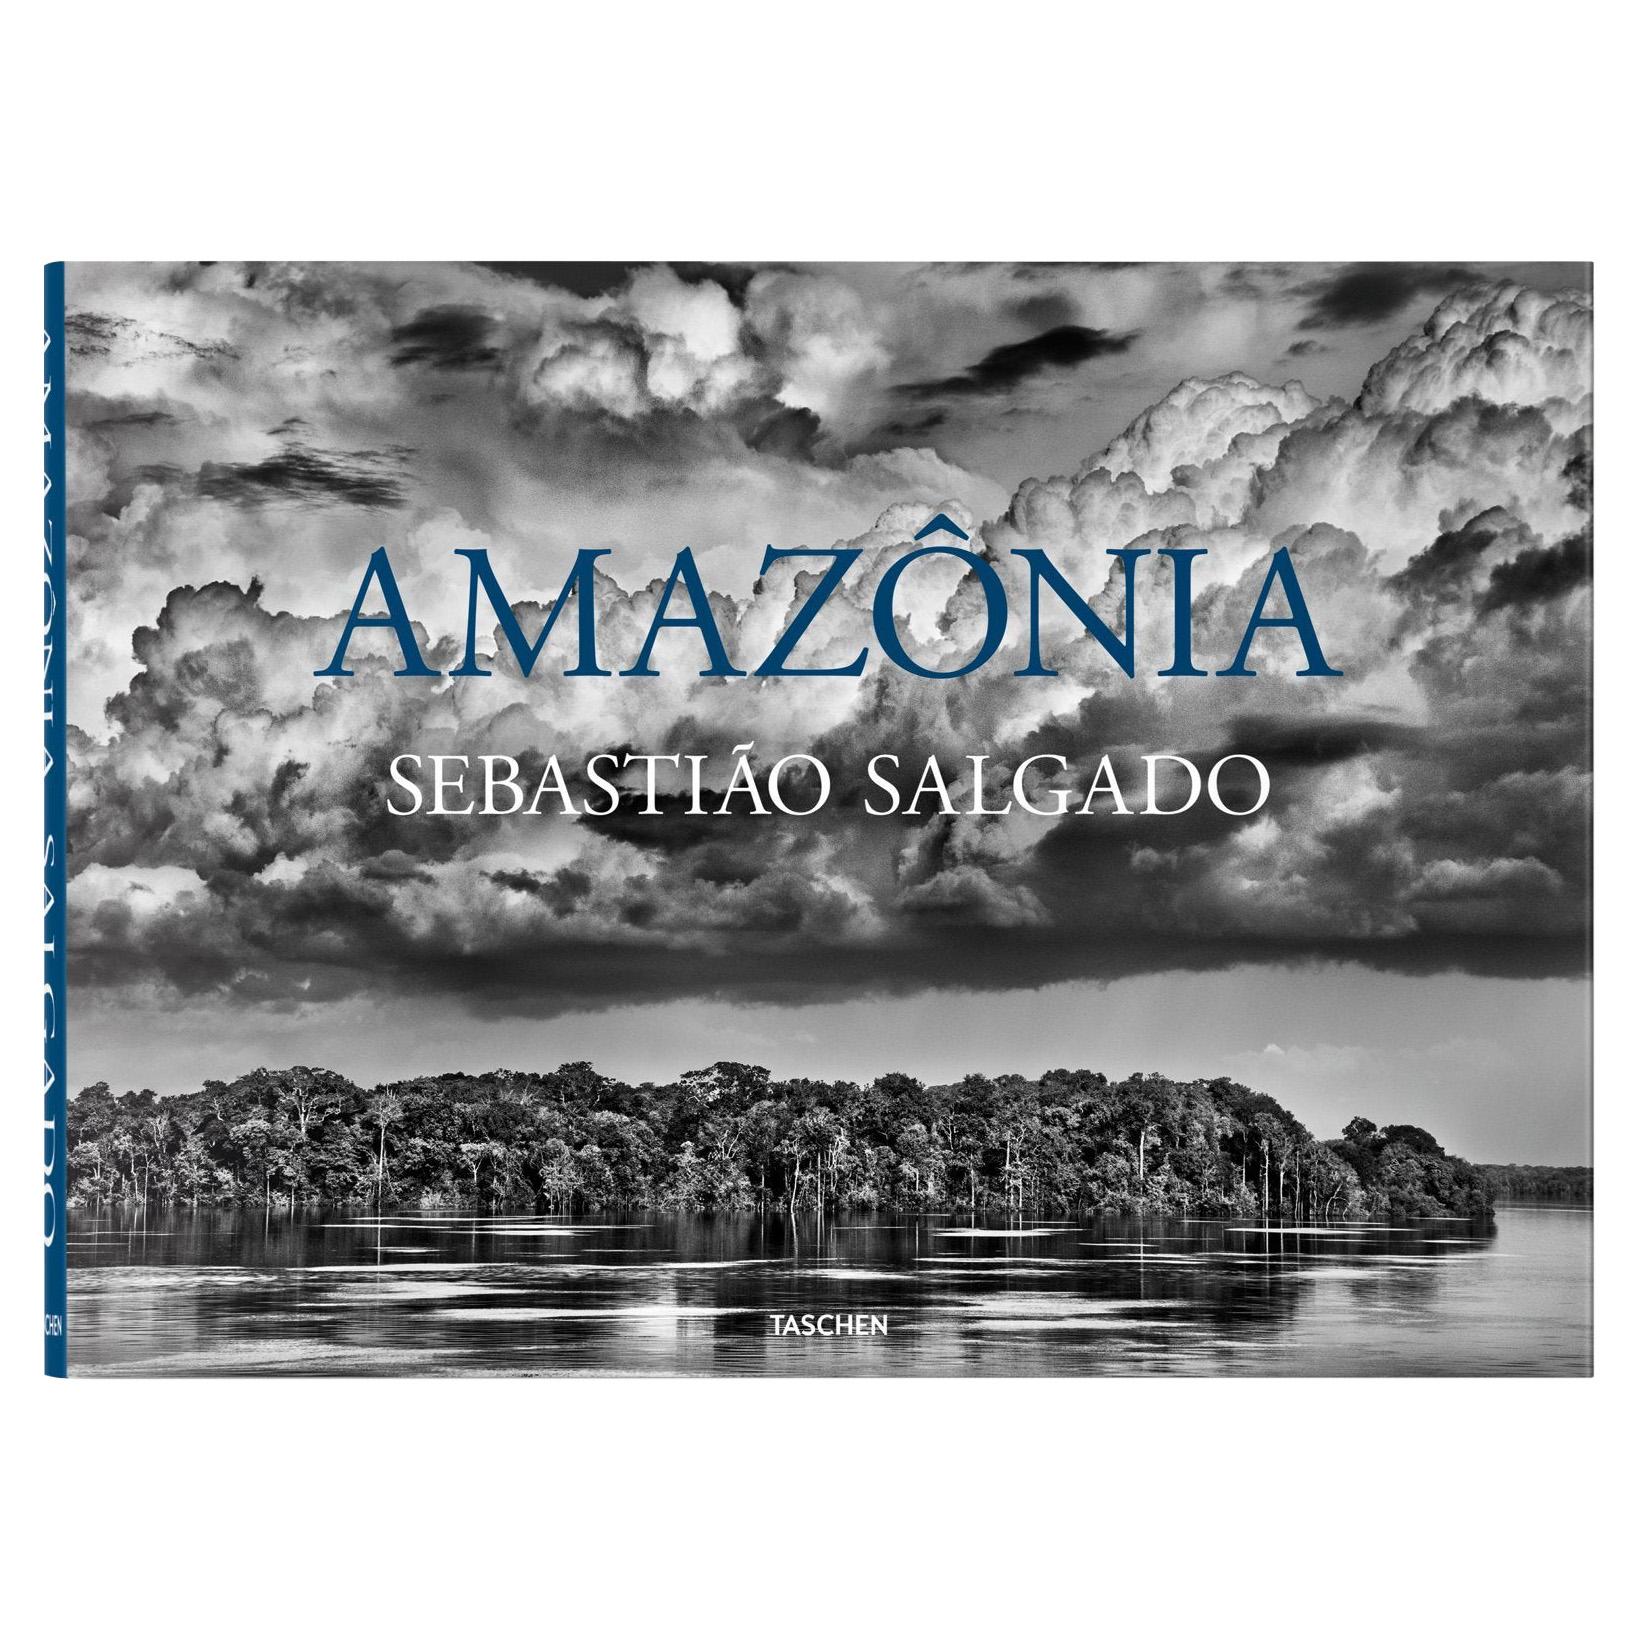 Sebastião Salgado, Amazônia, Photography Book